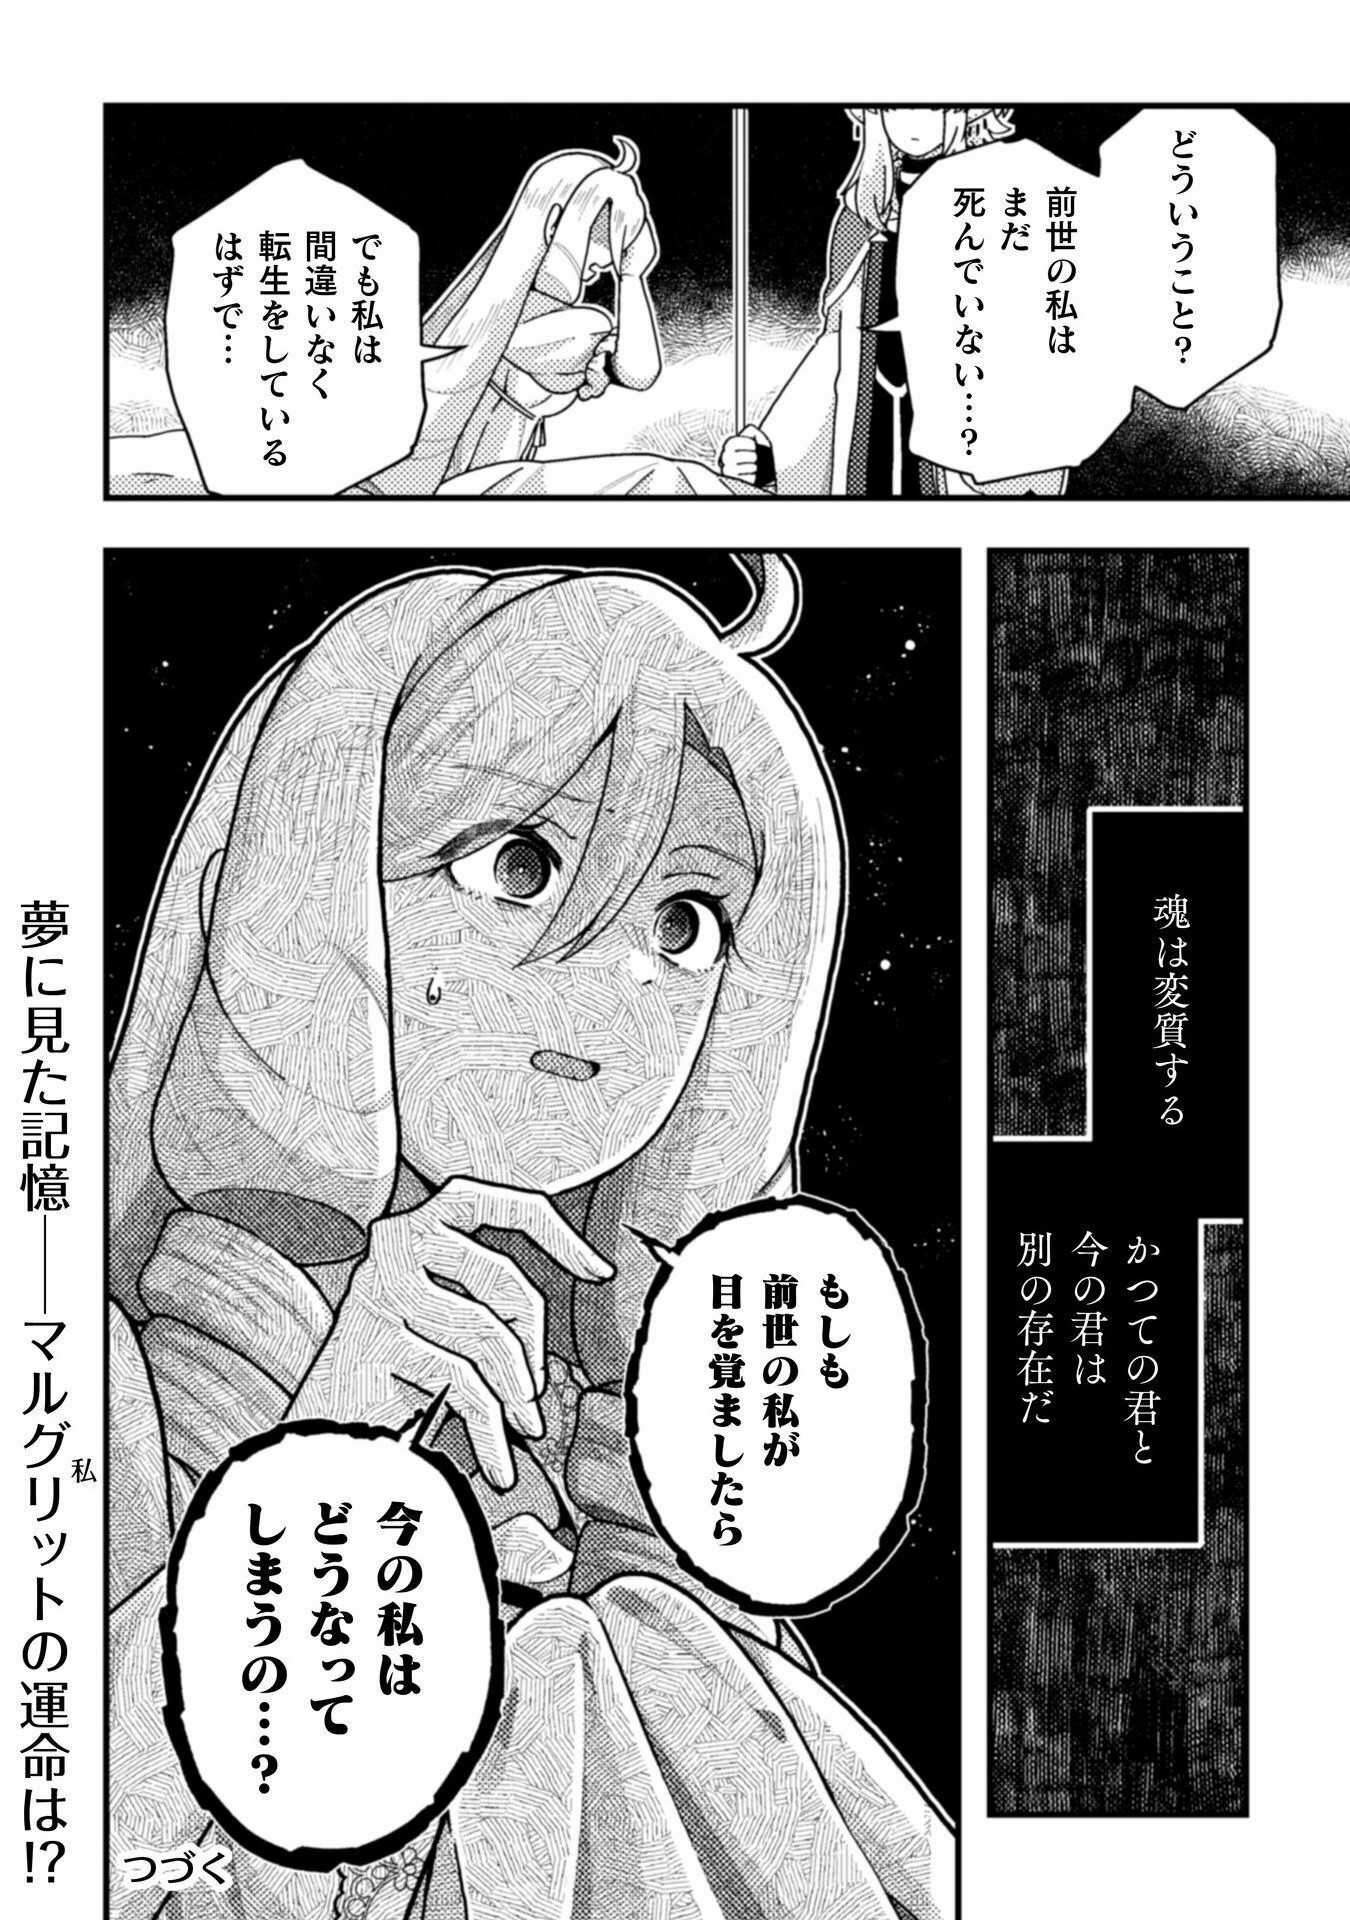 Otome Game no Akuyaku Reijou ni Tensei shitakedo Follower ga Fukyoushiteta Chisiki shikanai - Chapter 20 - Page 28